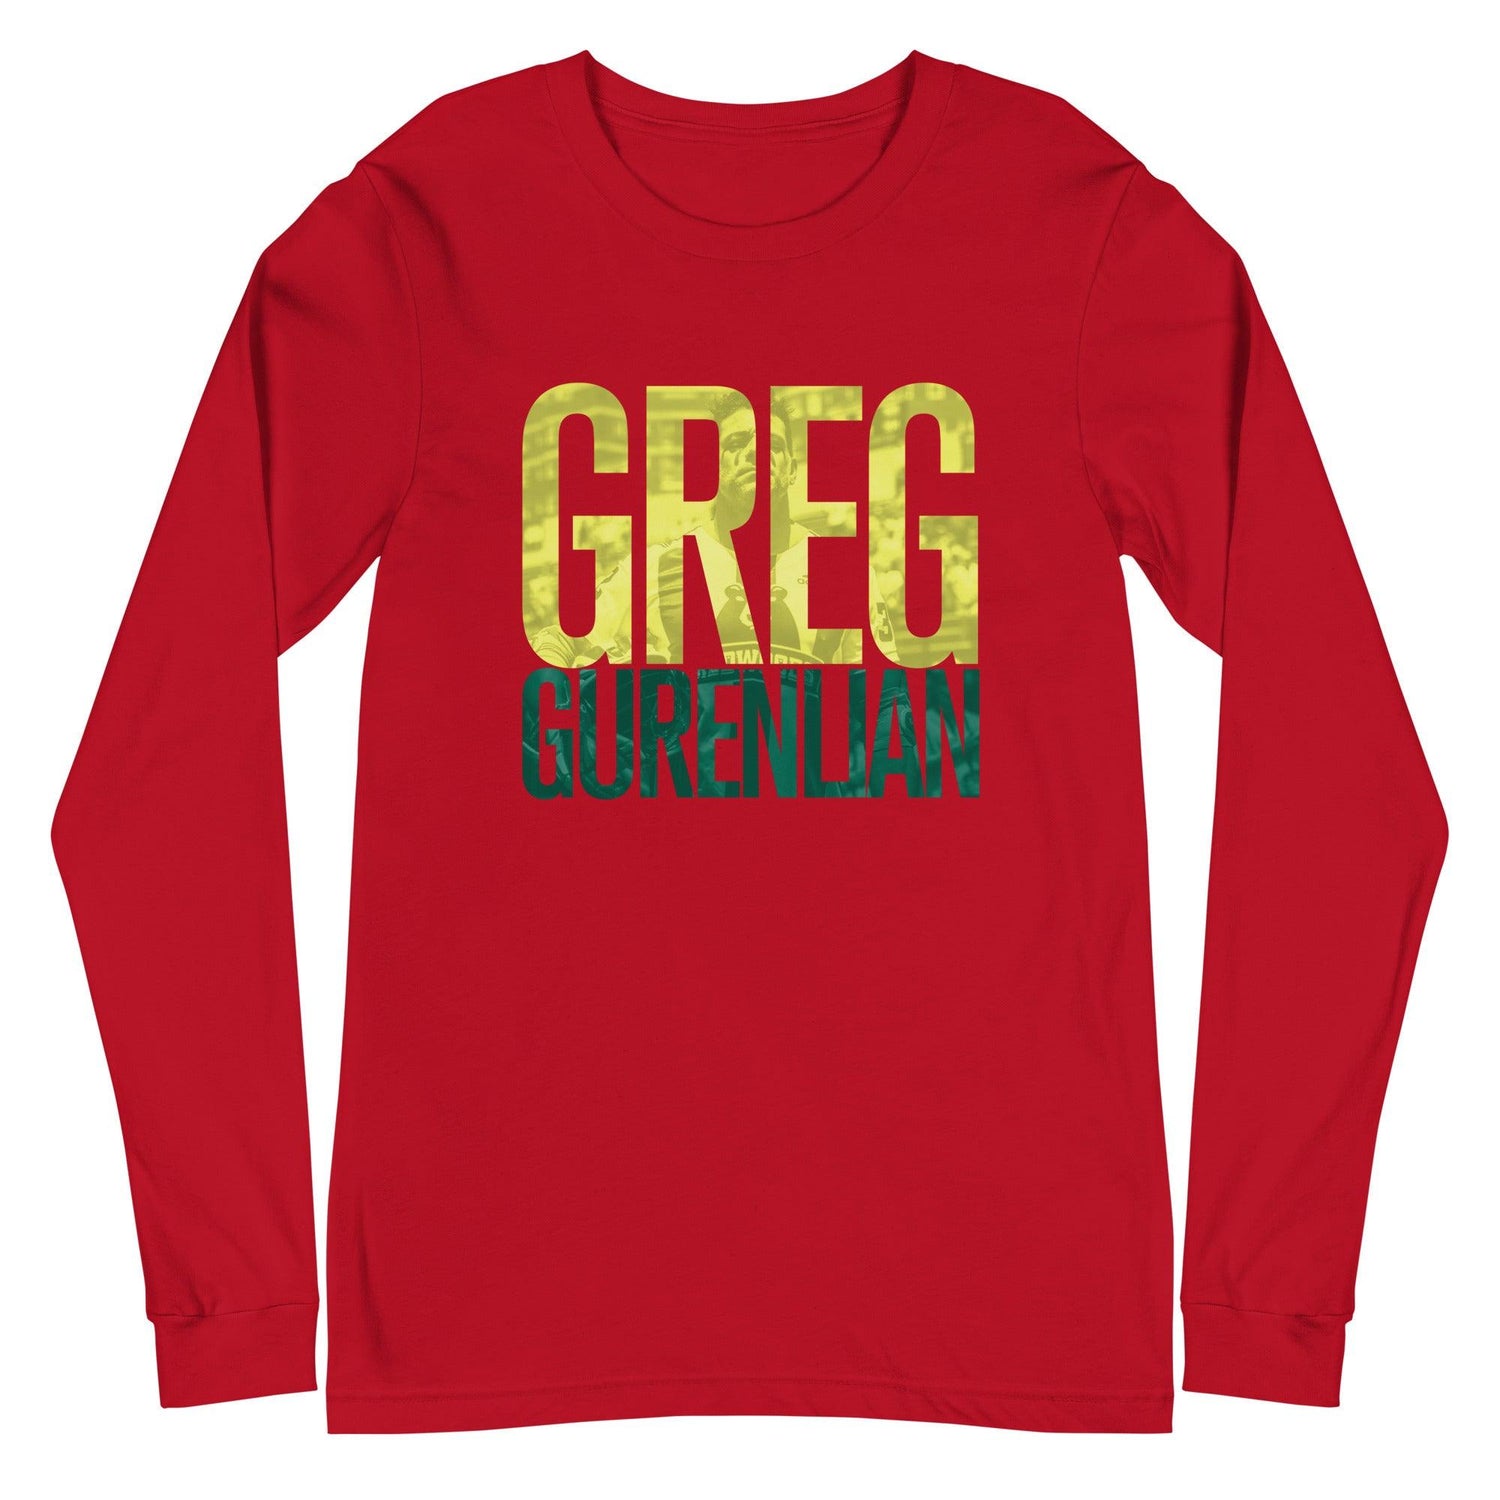 Greg Gurenlian "Gameday" Long Sleeve Tee - Fan Arch